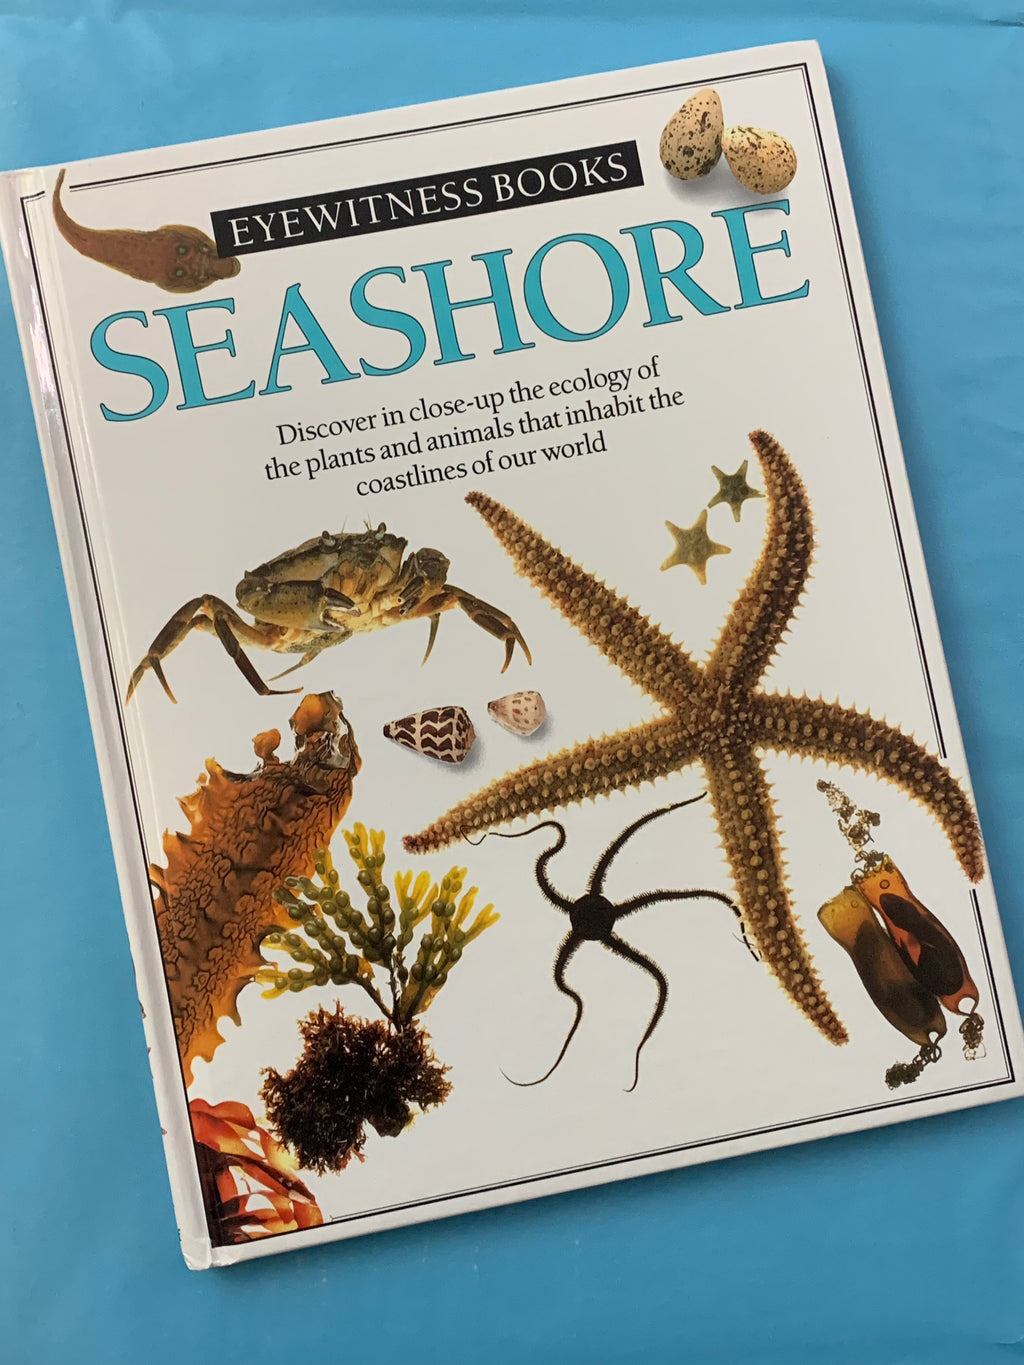 Eyewitness Books: Seashore